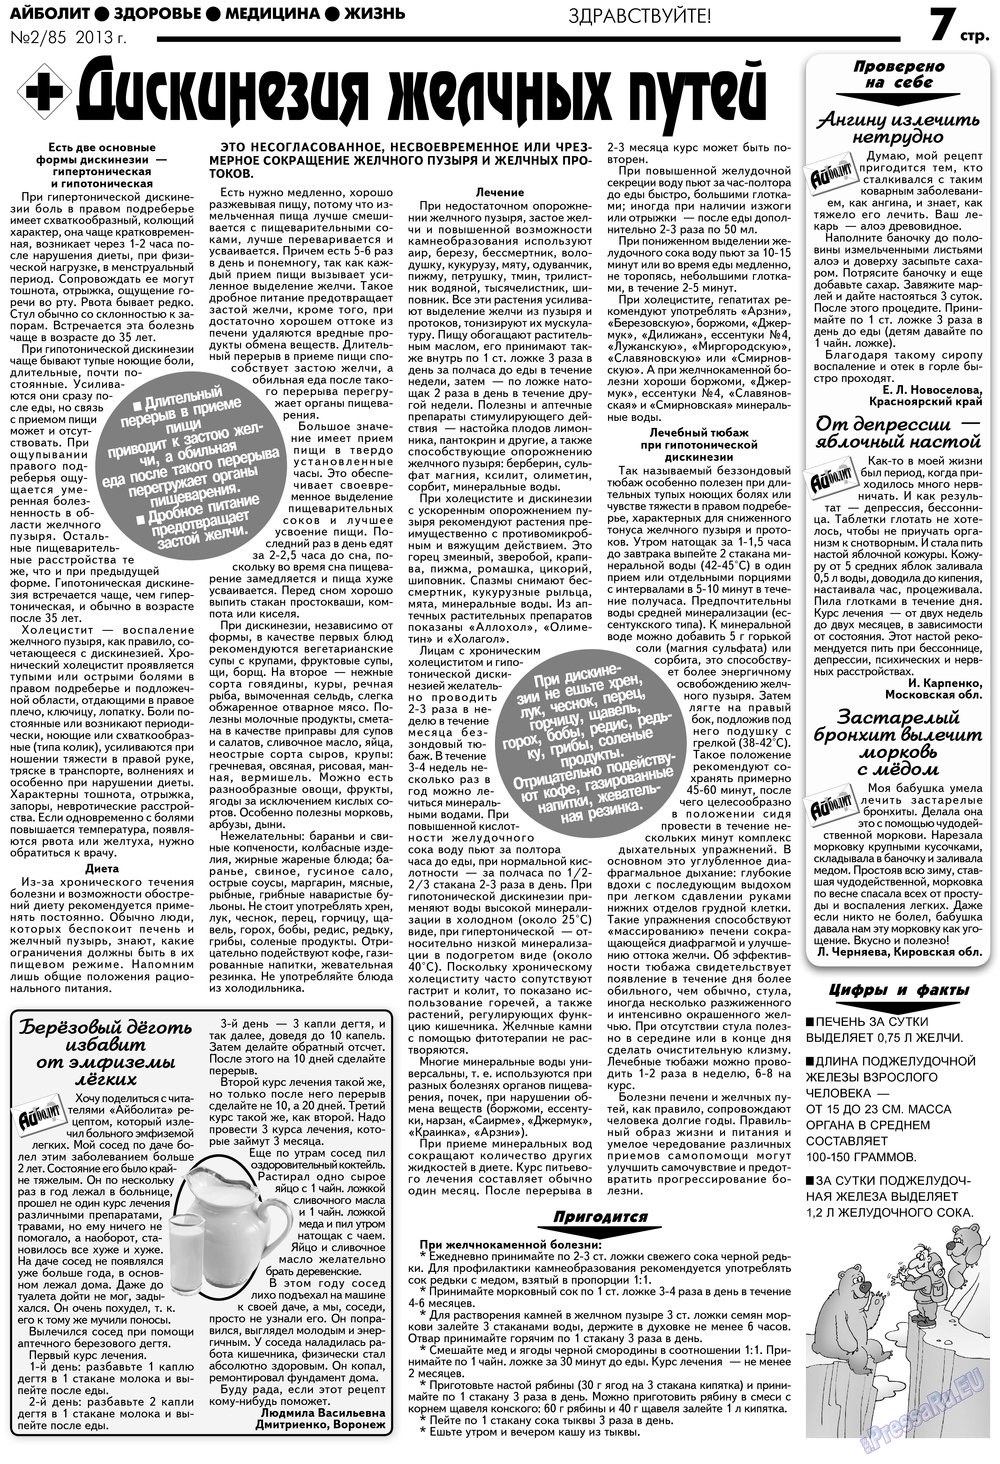 АйБолит, газета. 2013 №2 стр.7